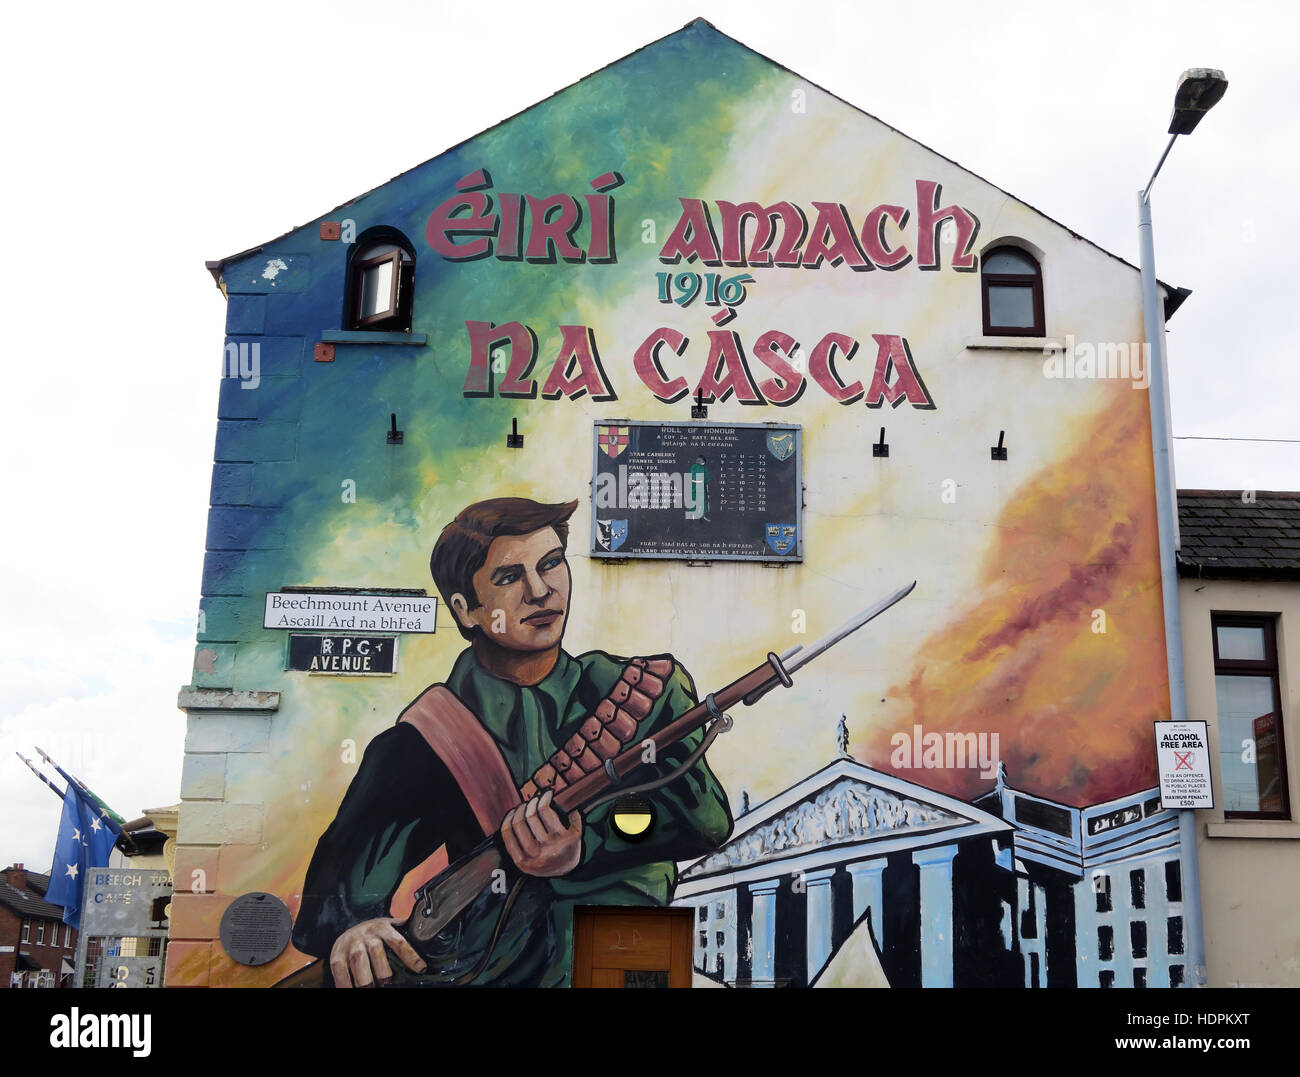 Belfast cade Rd murale repubblicano- RPG Ave, Beechmount Avenue,1916 Pasqua in aumento Foto Stock